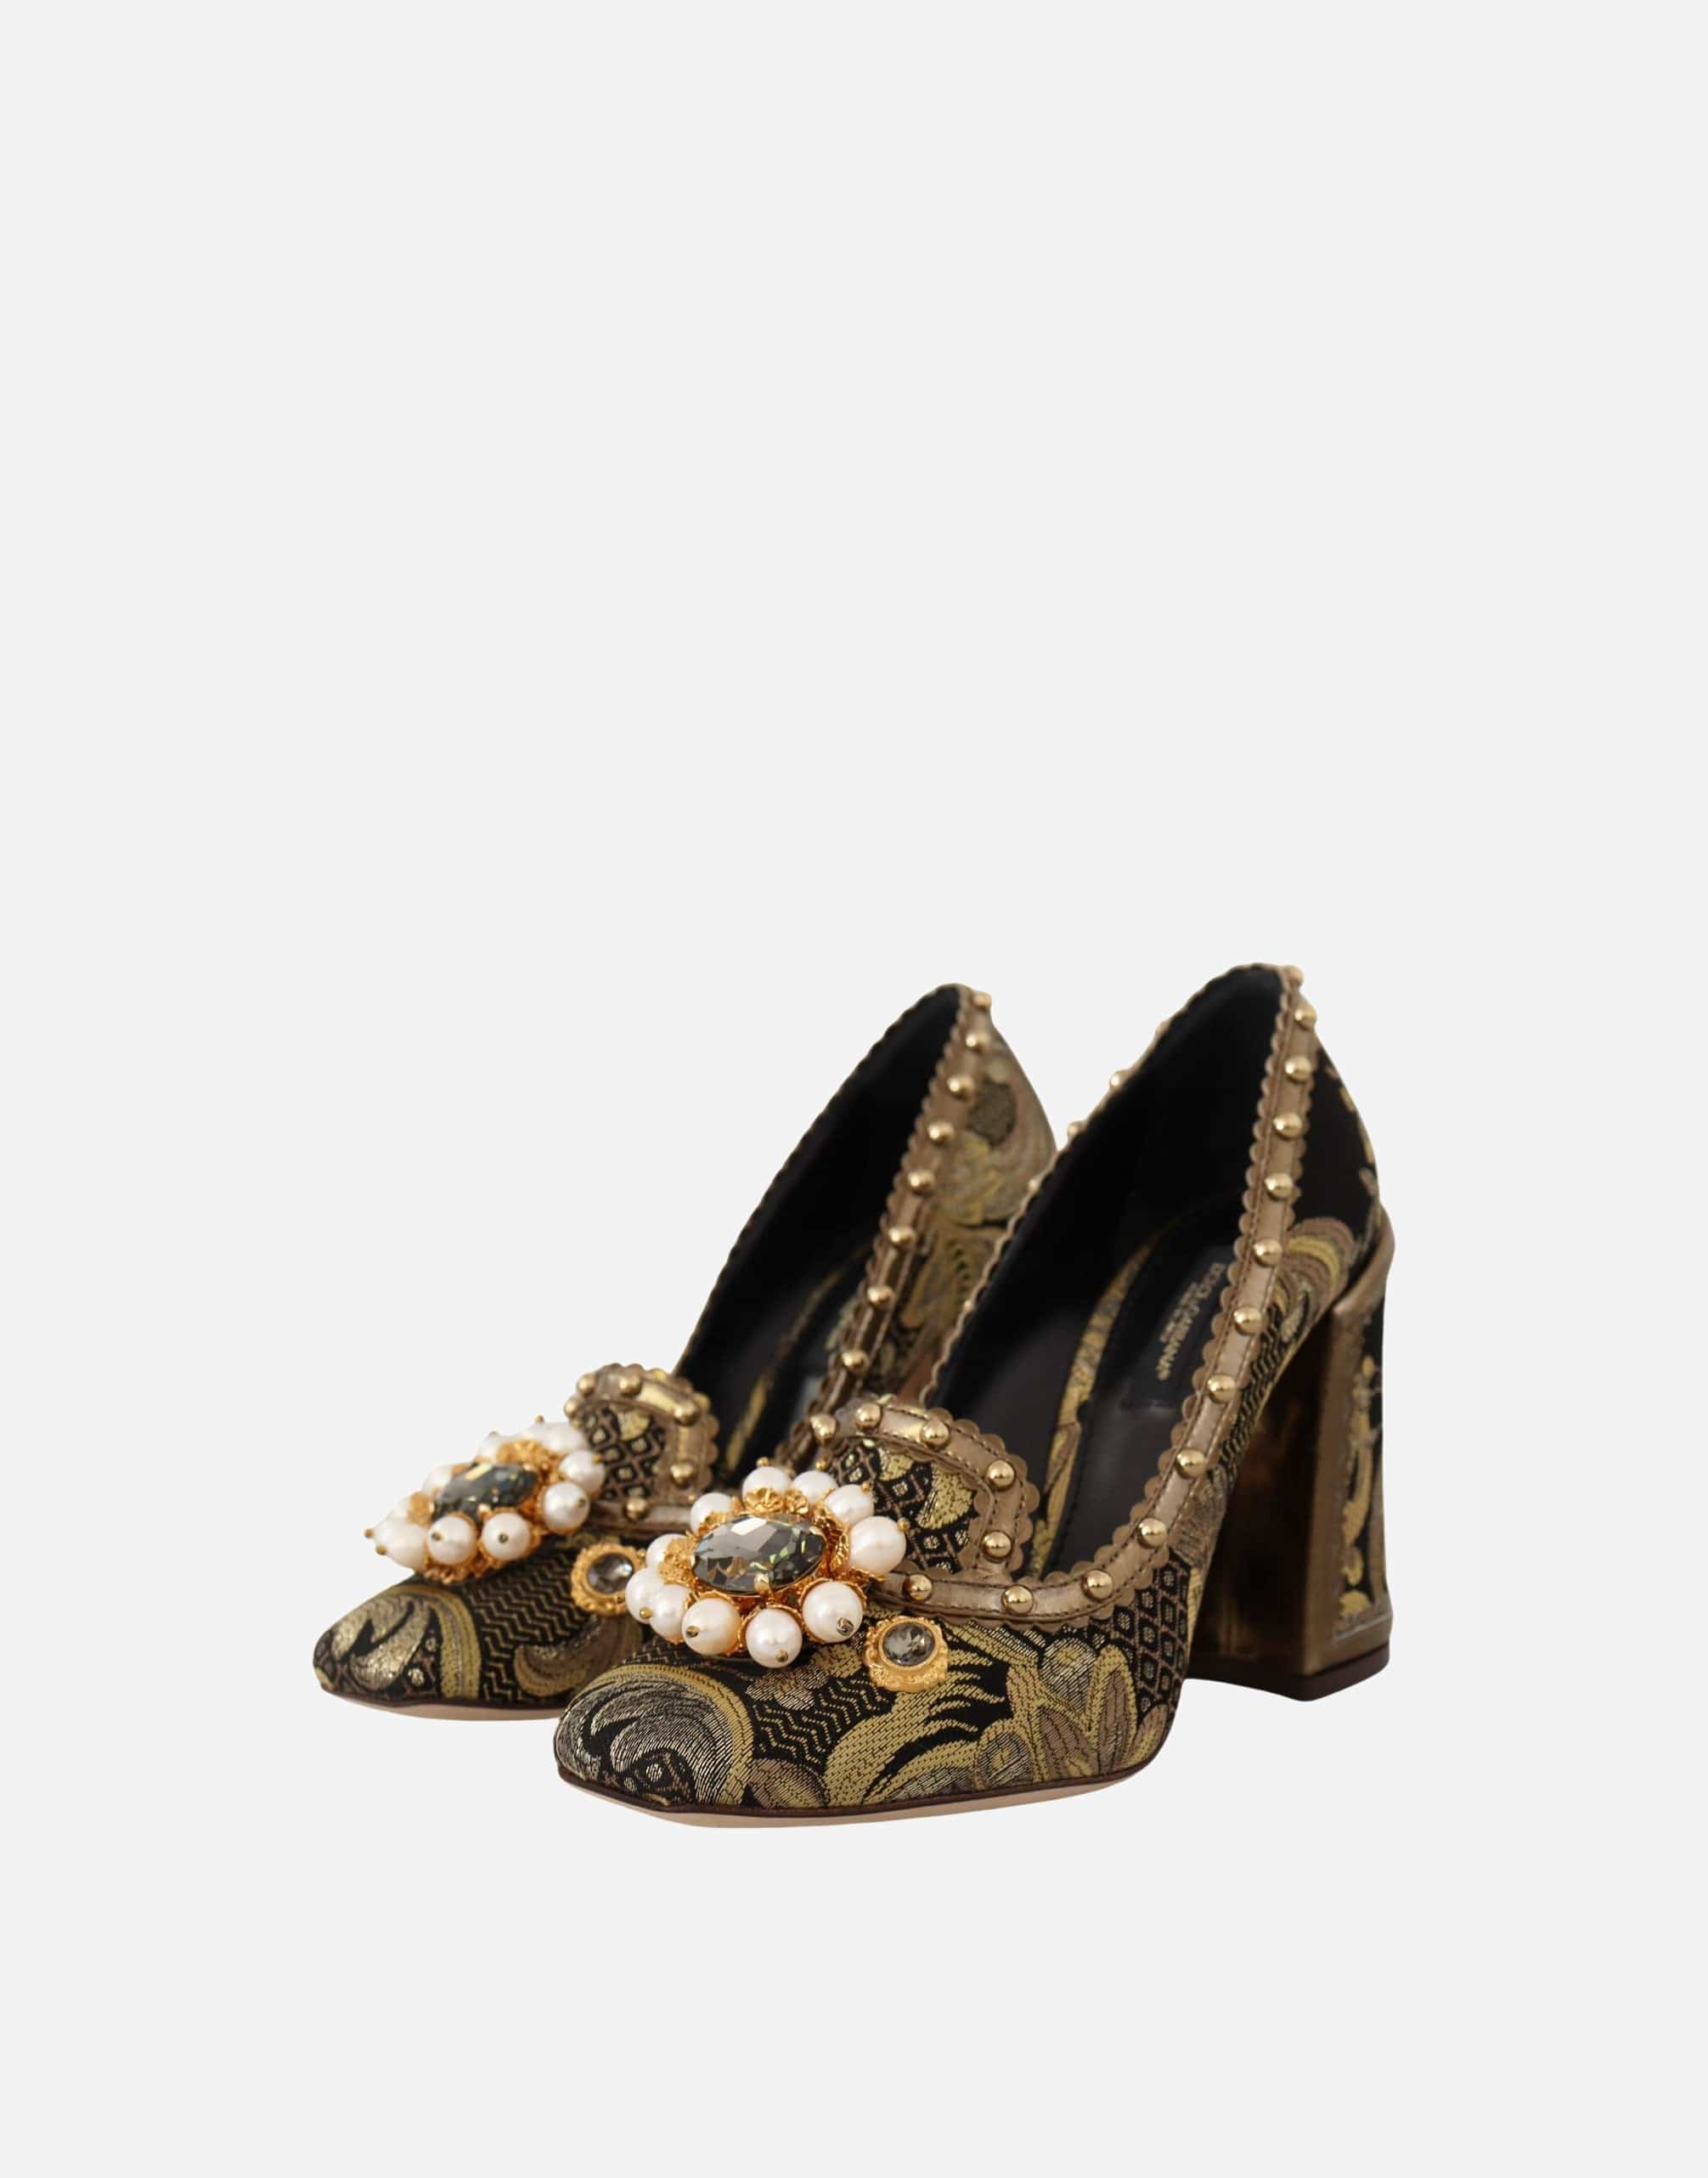 Dolce & Gabbana Crystal Embellished Square Toe Brocade Sandals